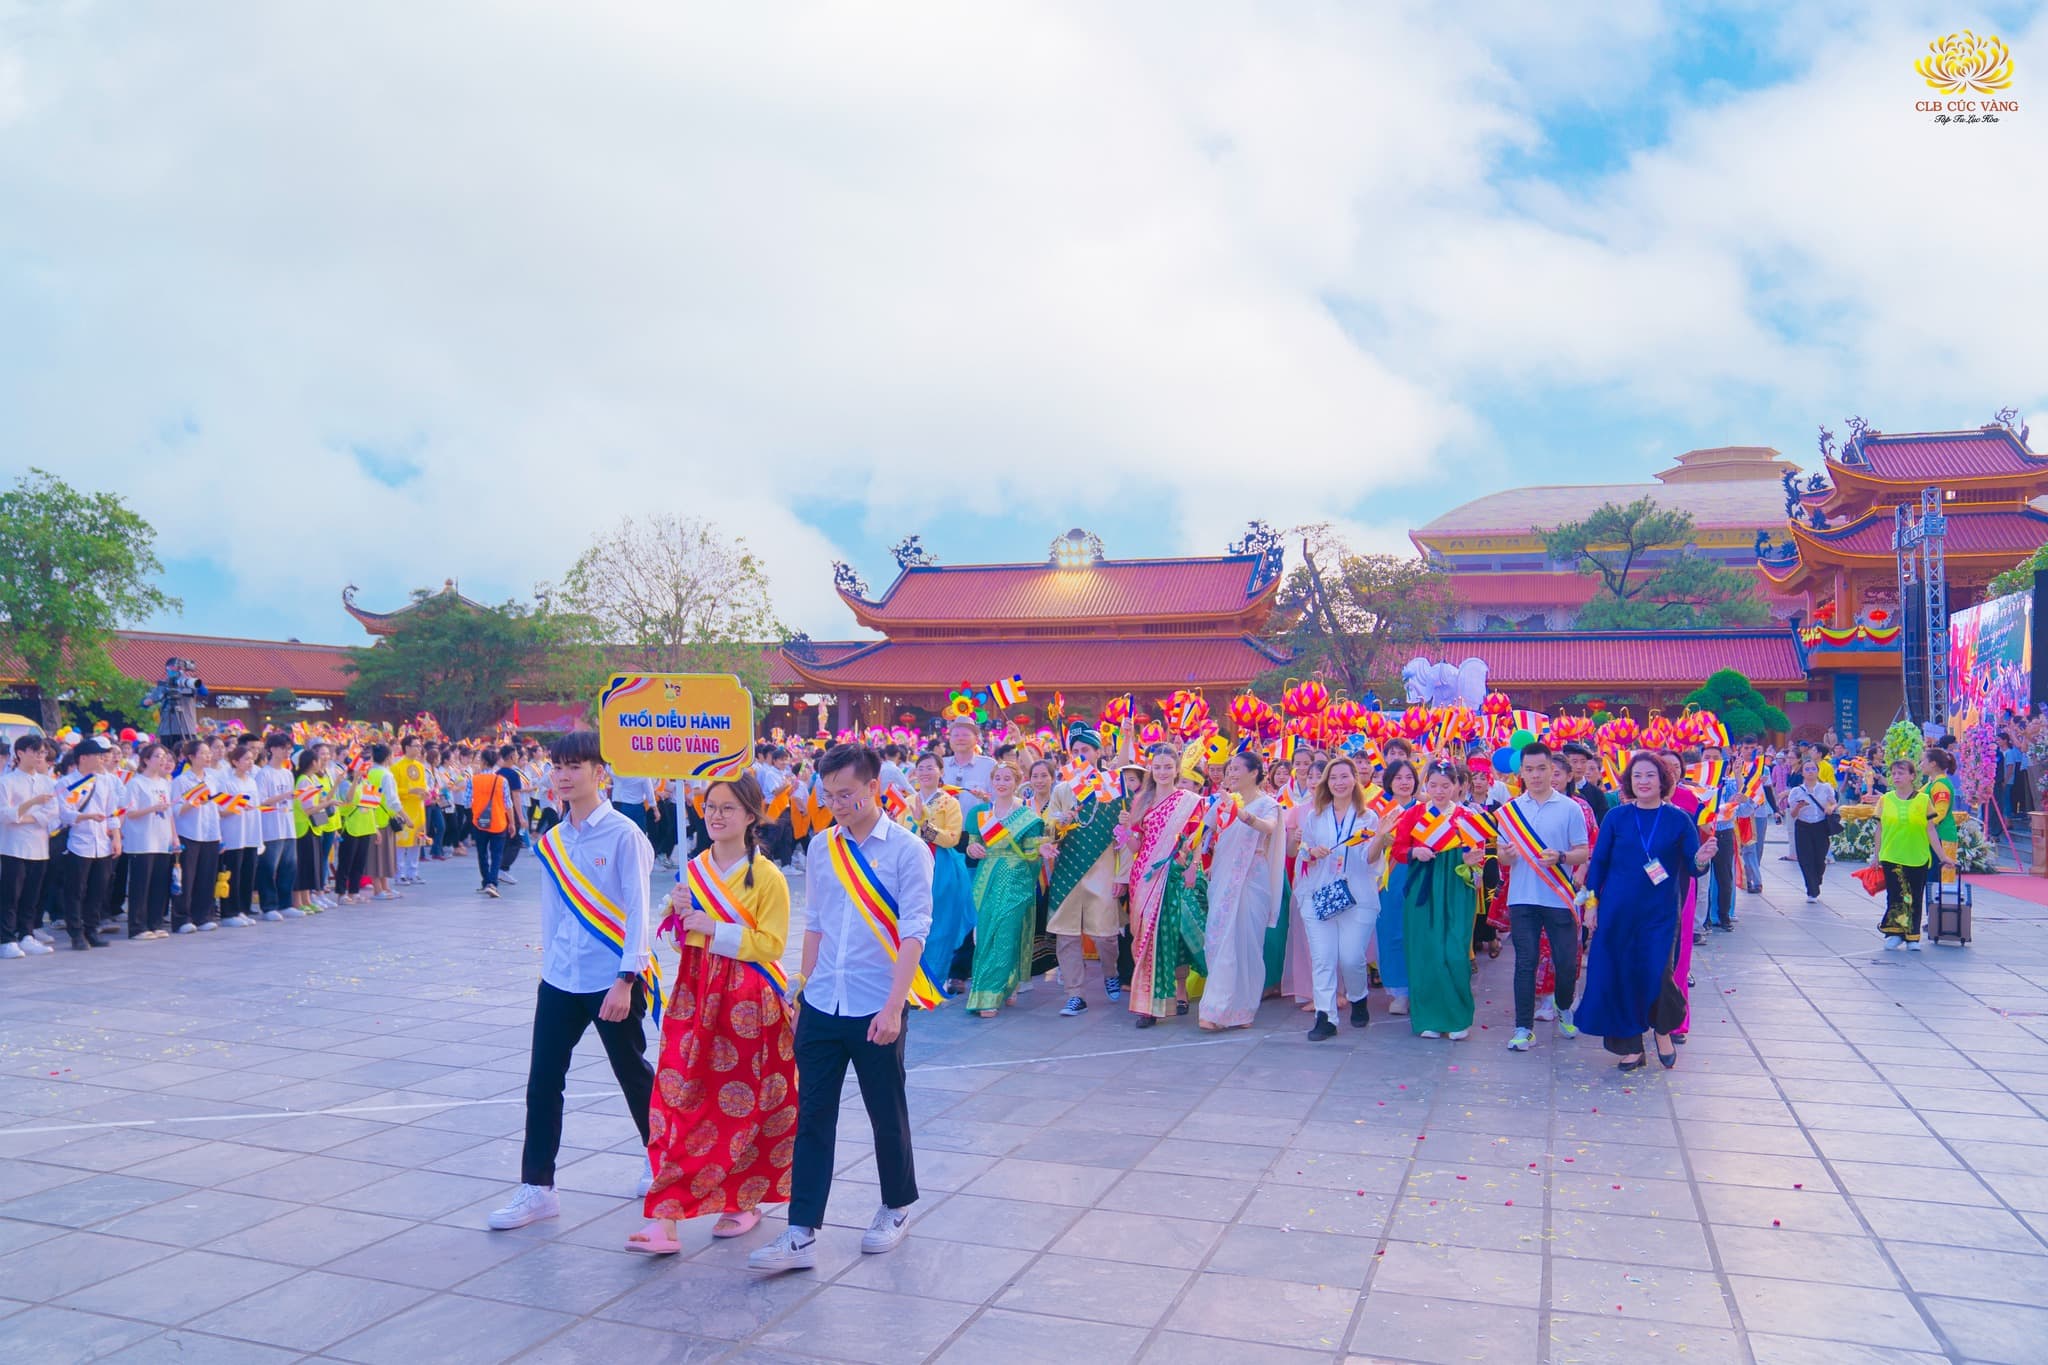 Khối diễu hành CLB Cúc Vàng - Tập Tu Lục Hòa với các Phật tử trong những bộ trang phục rực rỡ, đặc trưng cho các quốc gia, dân tộc. Tất cả đều hòa chung niềm vui đón mừng Đức Thế Tôn giáng trần